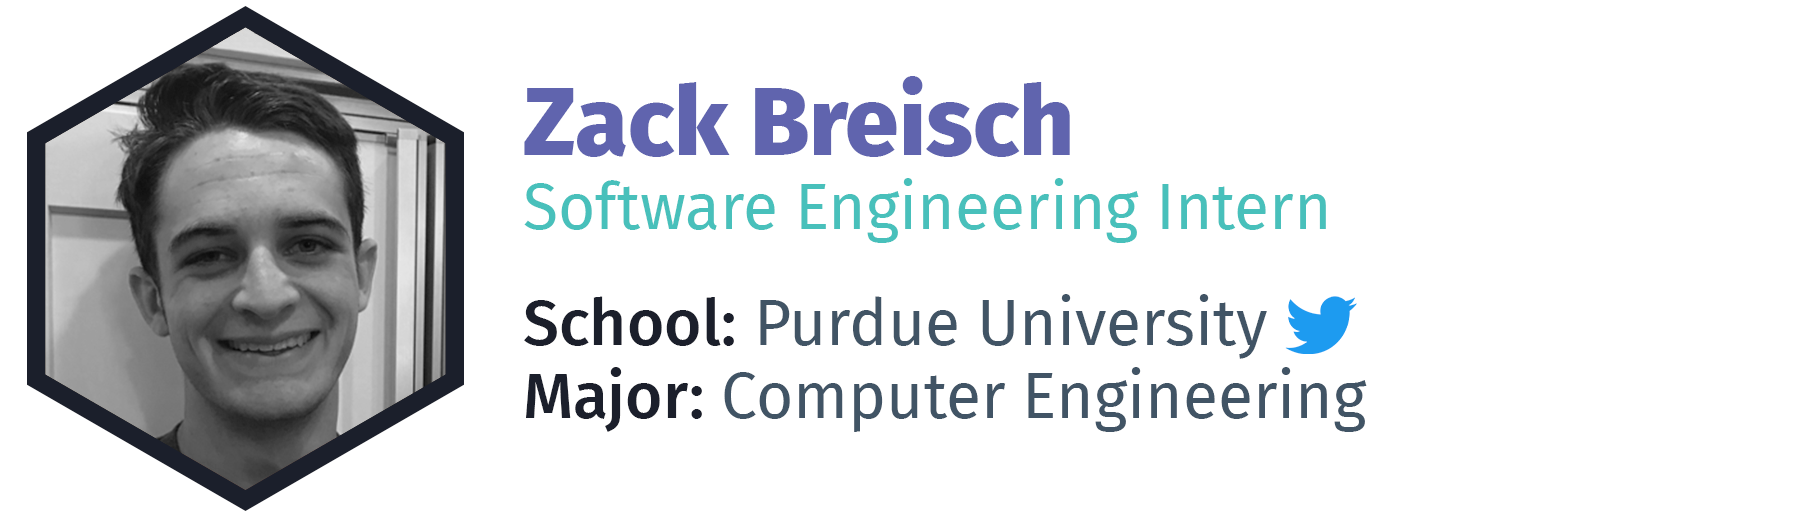 Zack Breisch - Software Engineering Intern